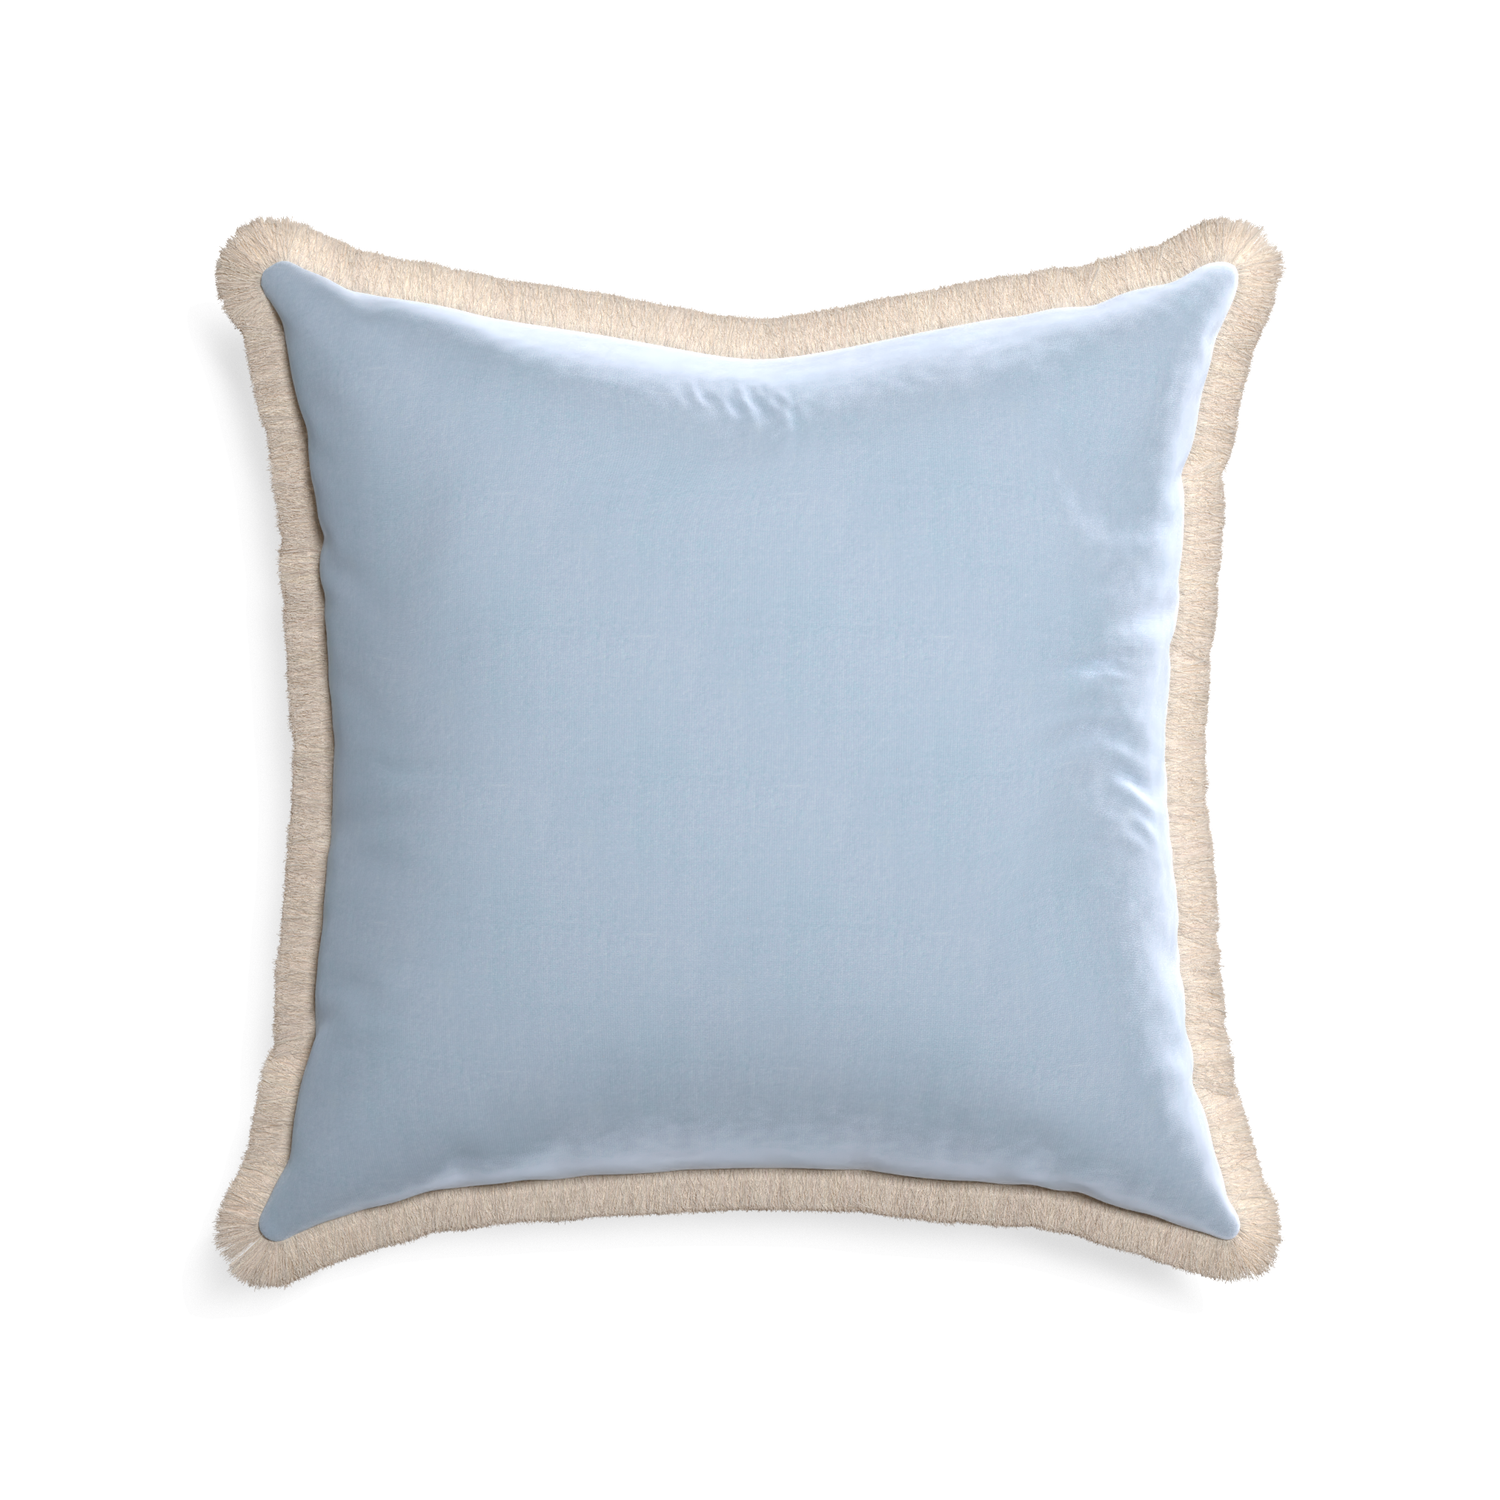 22-square sky velvet custom pillow with cream fringe on white background